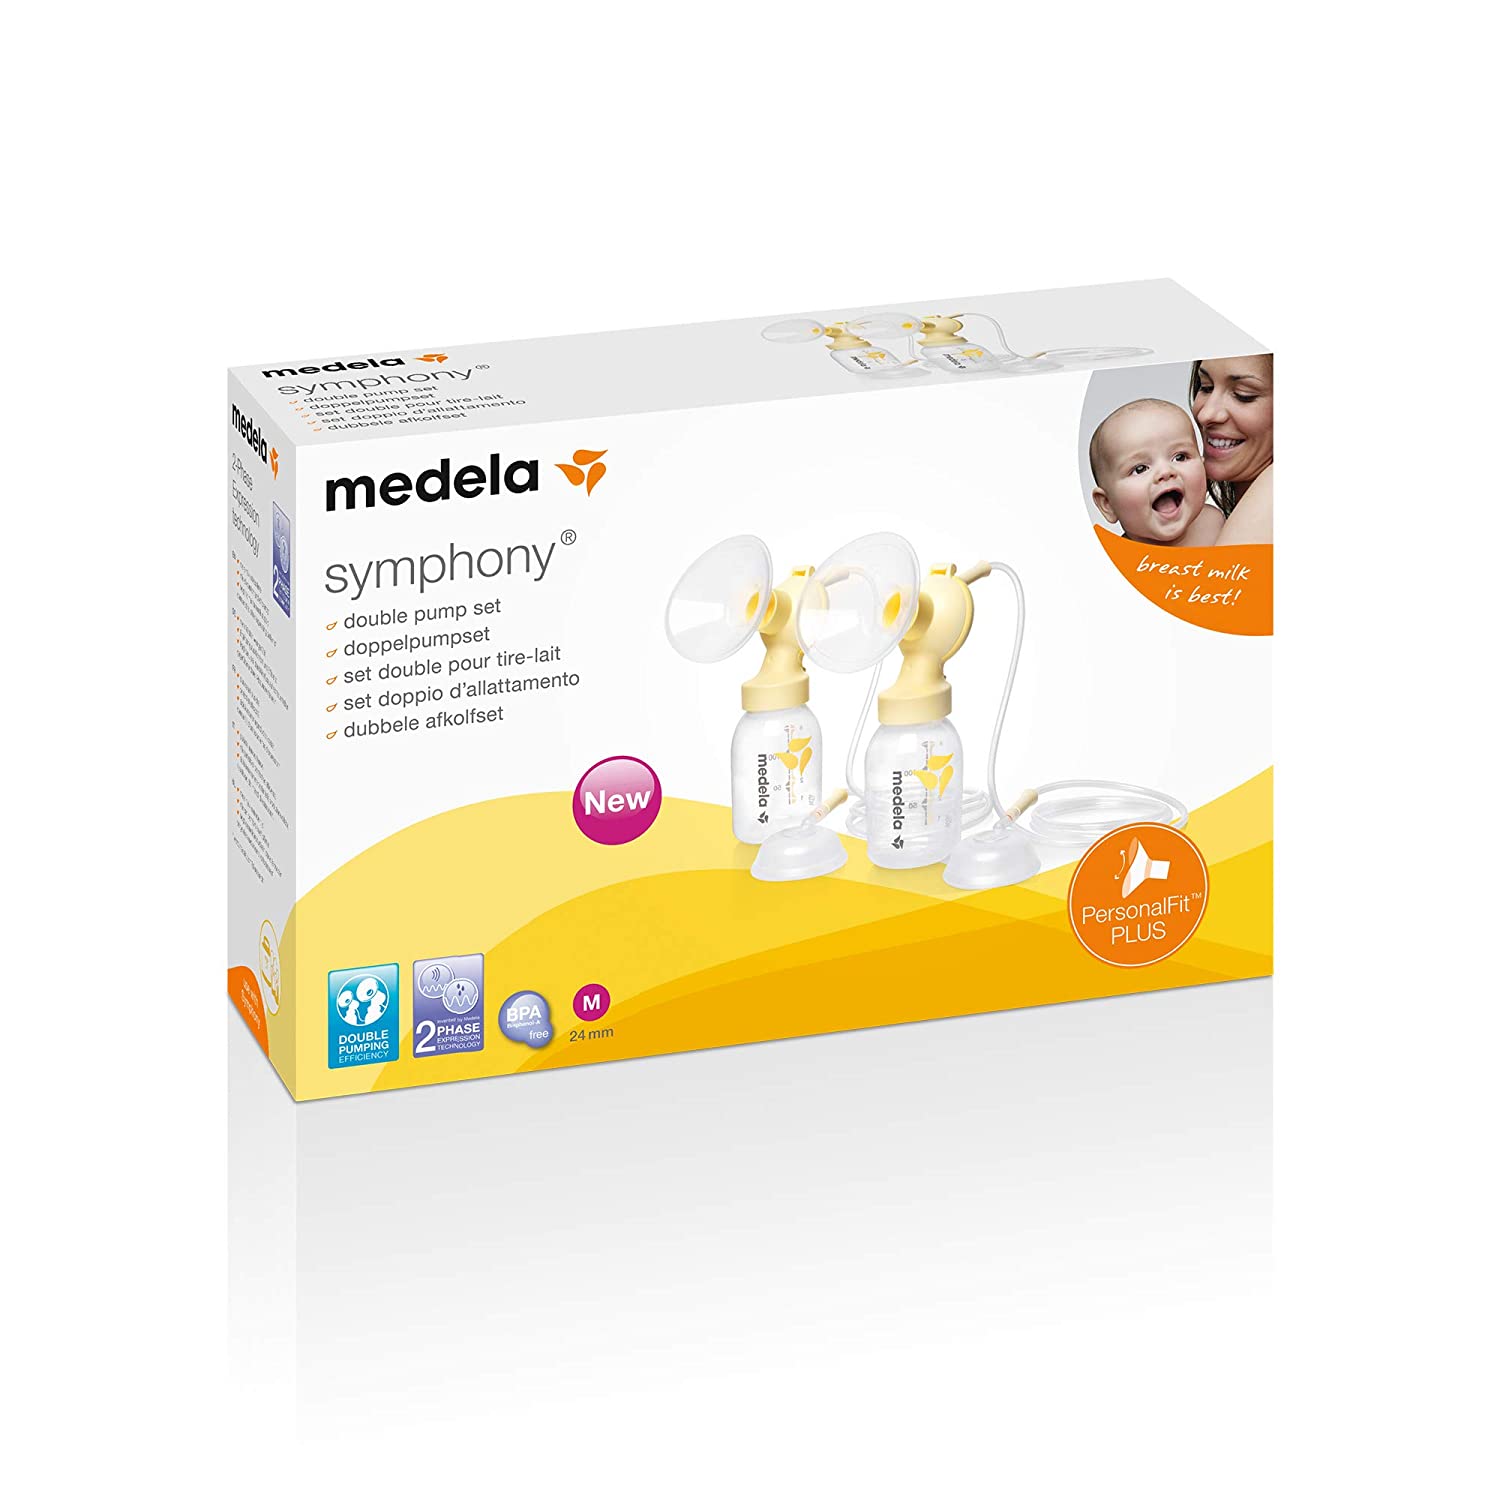 Medela PersonalFit Plus Double Piston Set for Symphony, Size M (24 mm)